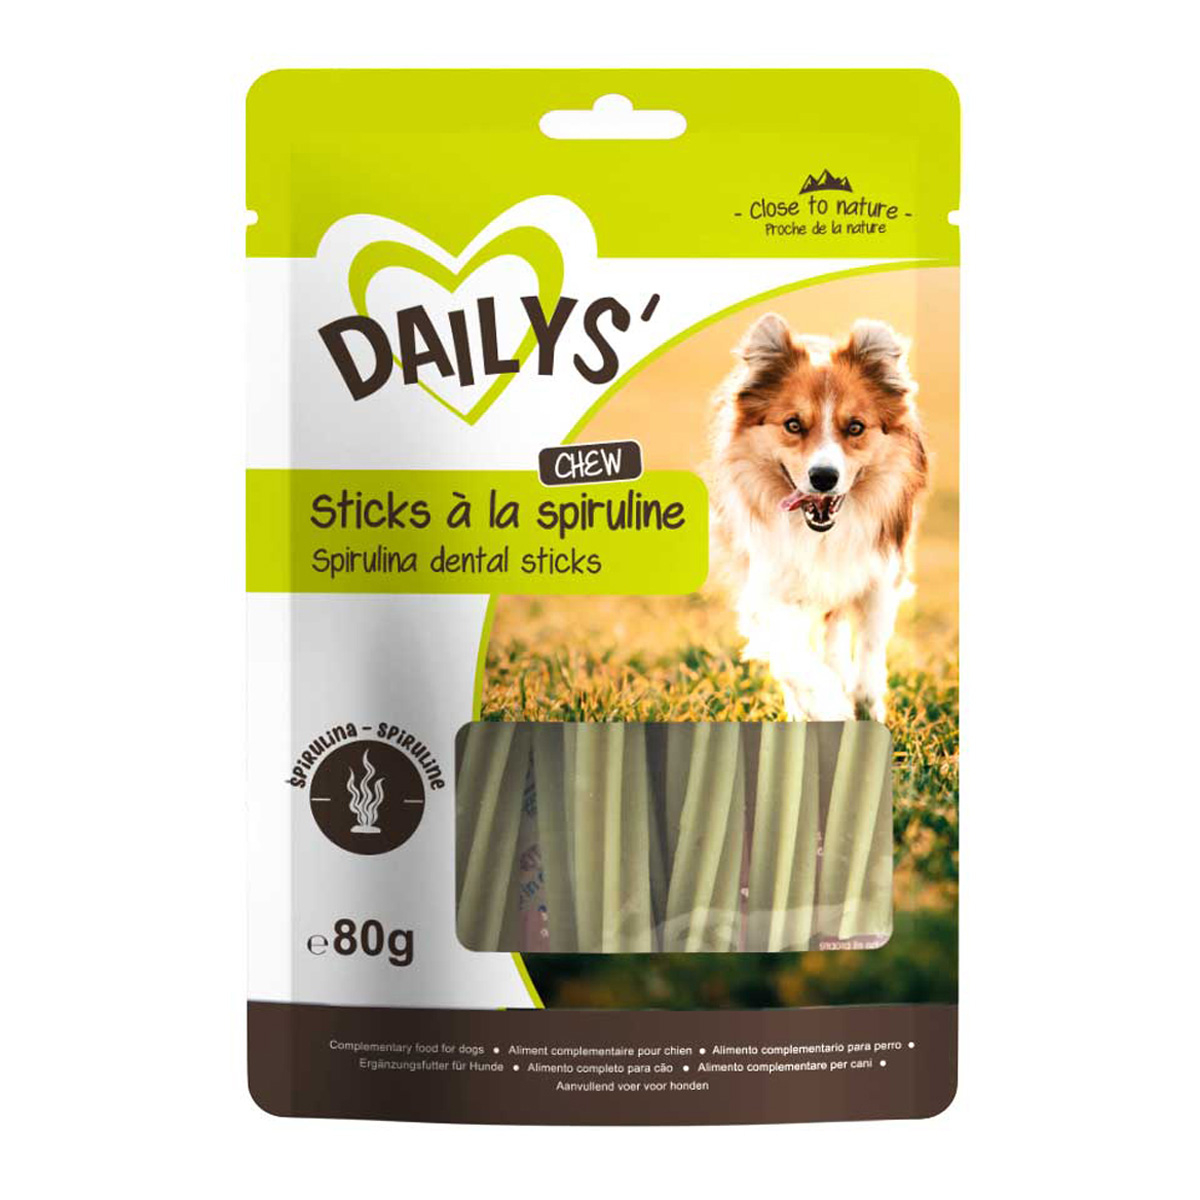 Dailys sticks met spirulina voor honden